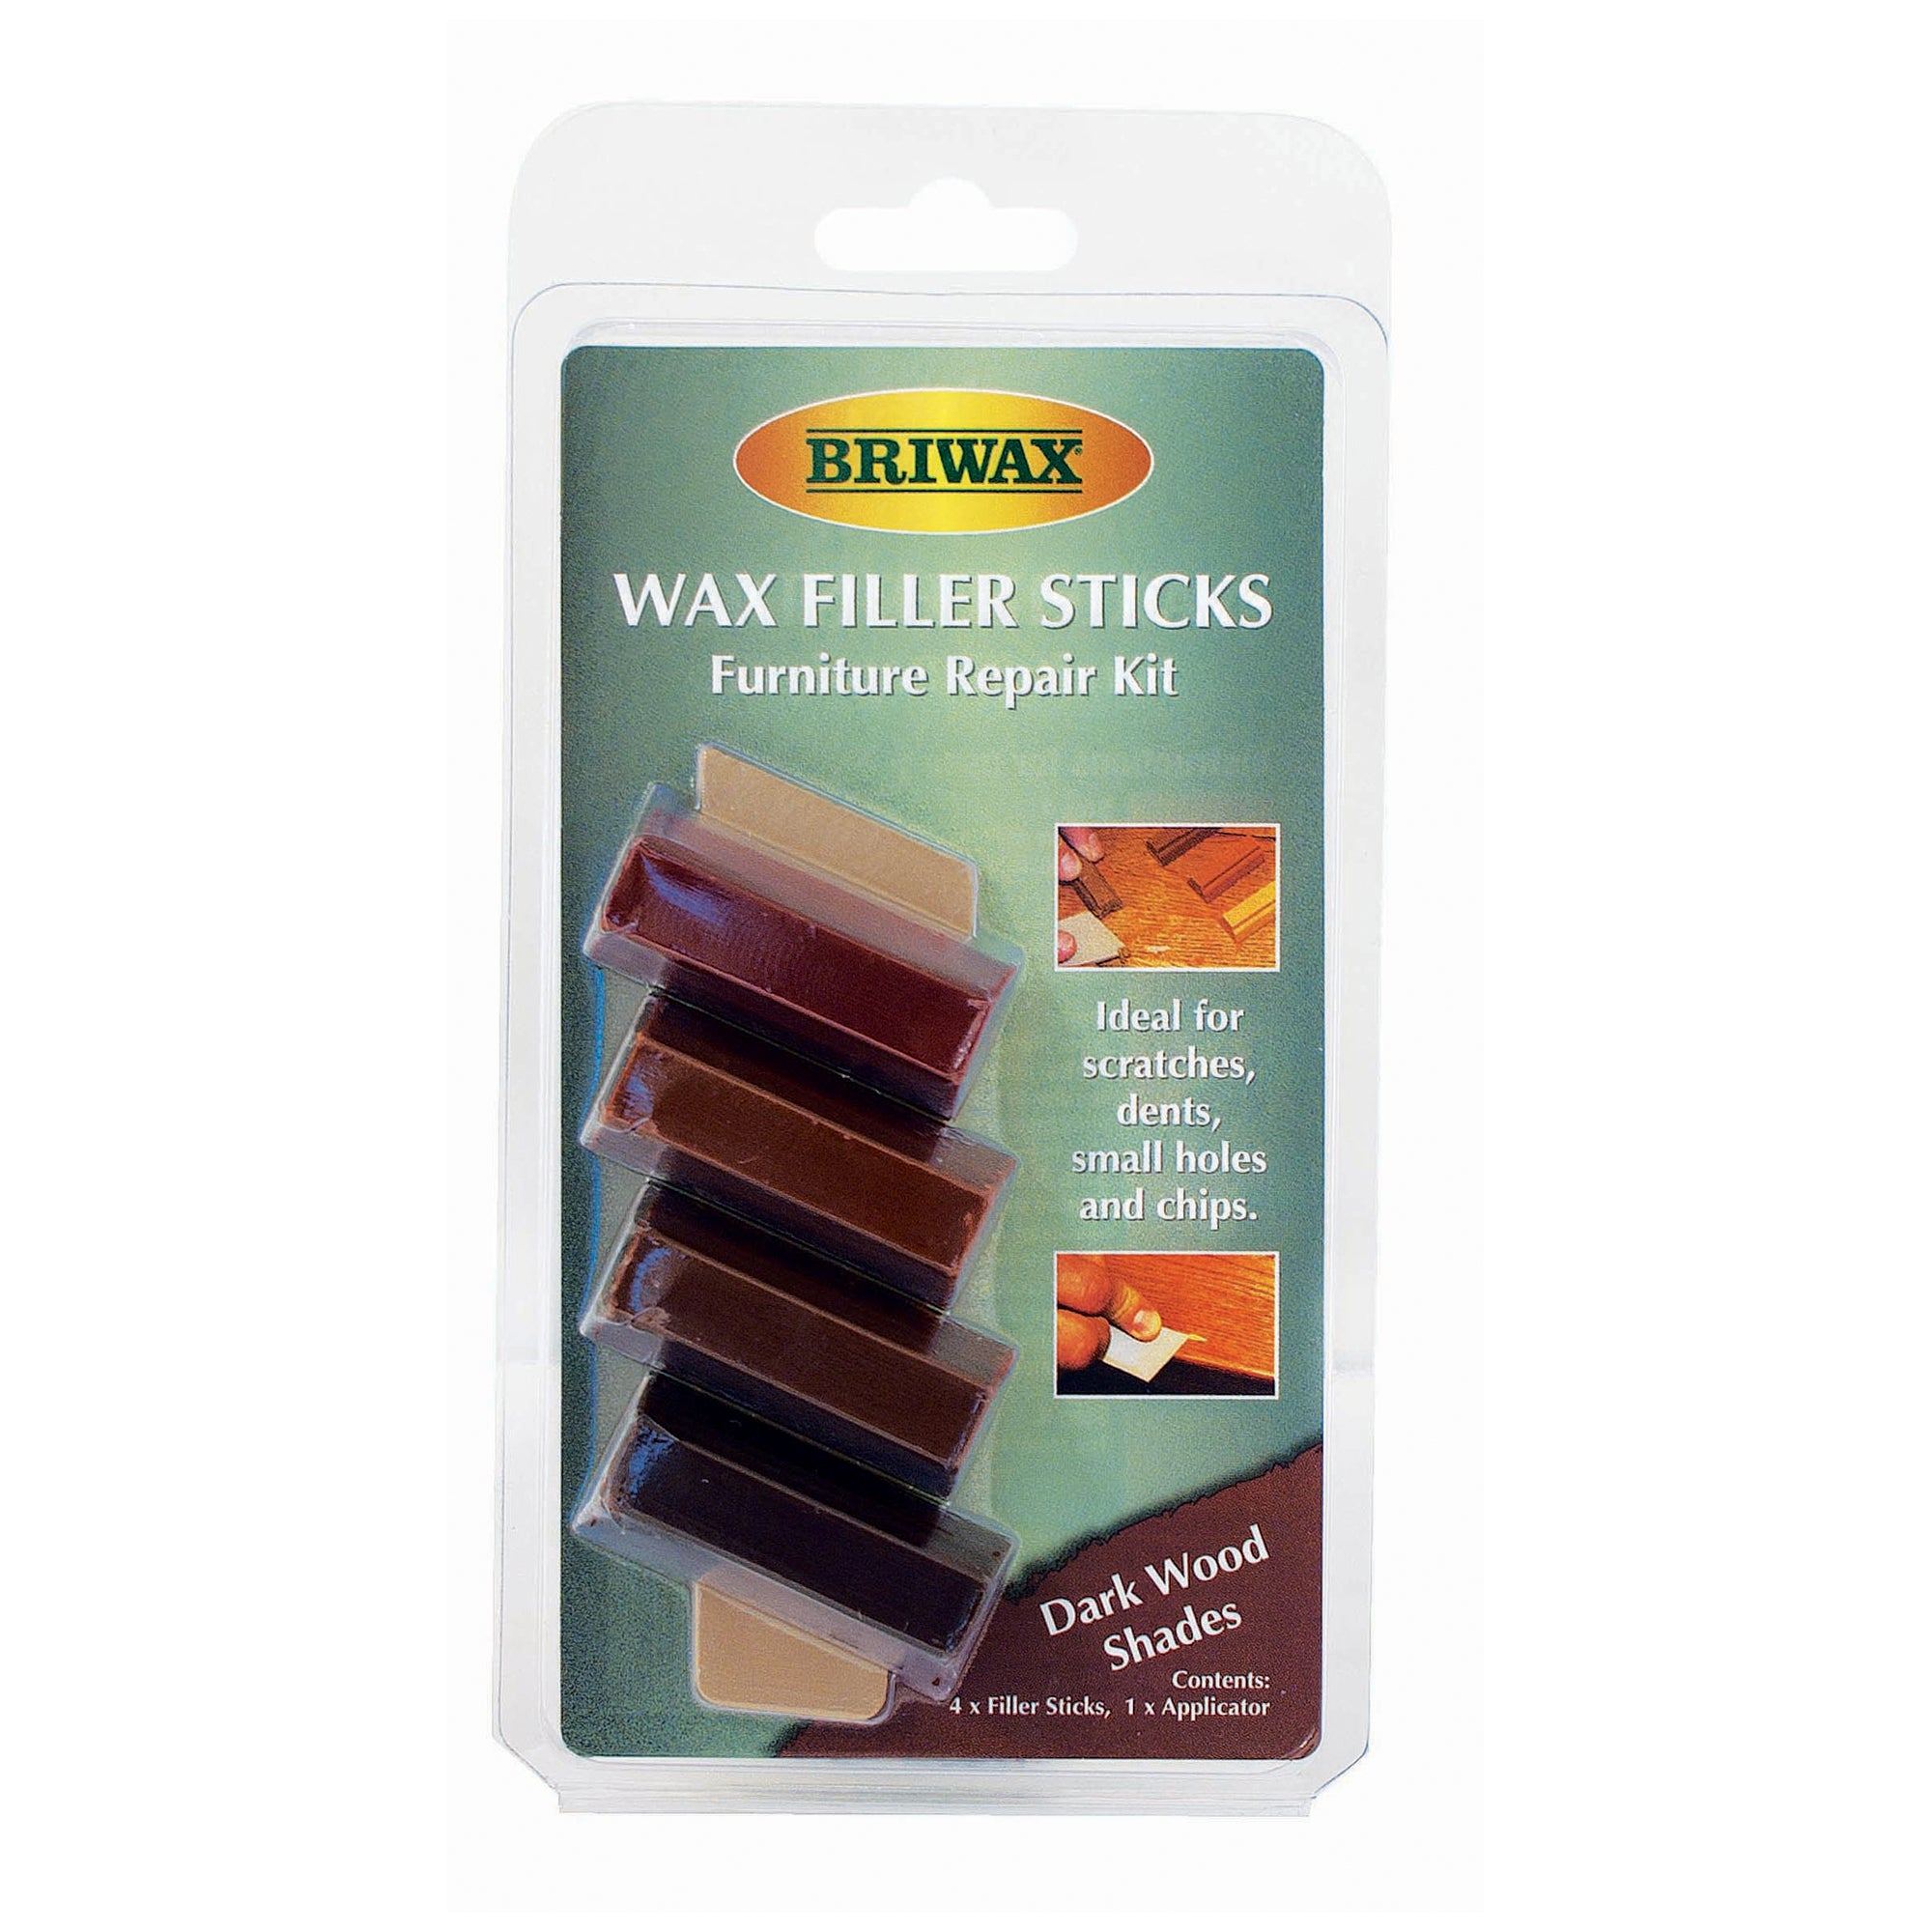 Briwax Wax Filler Sticks Dark Wood Shades